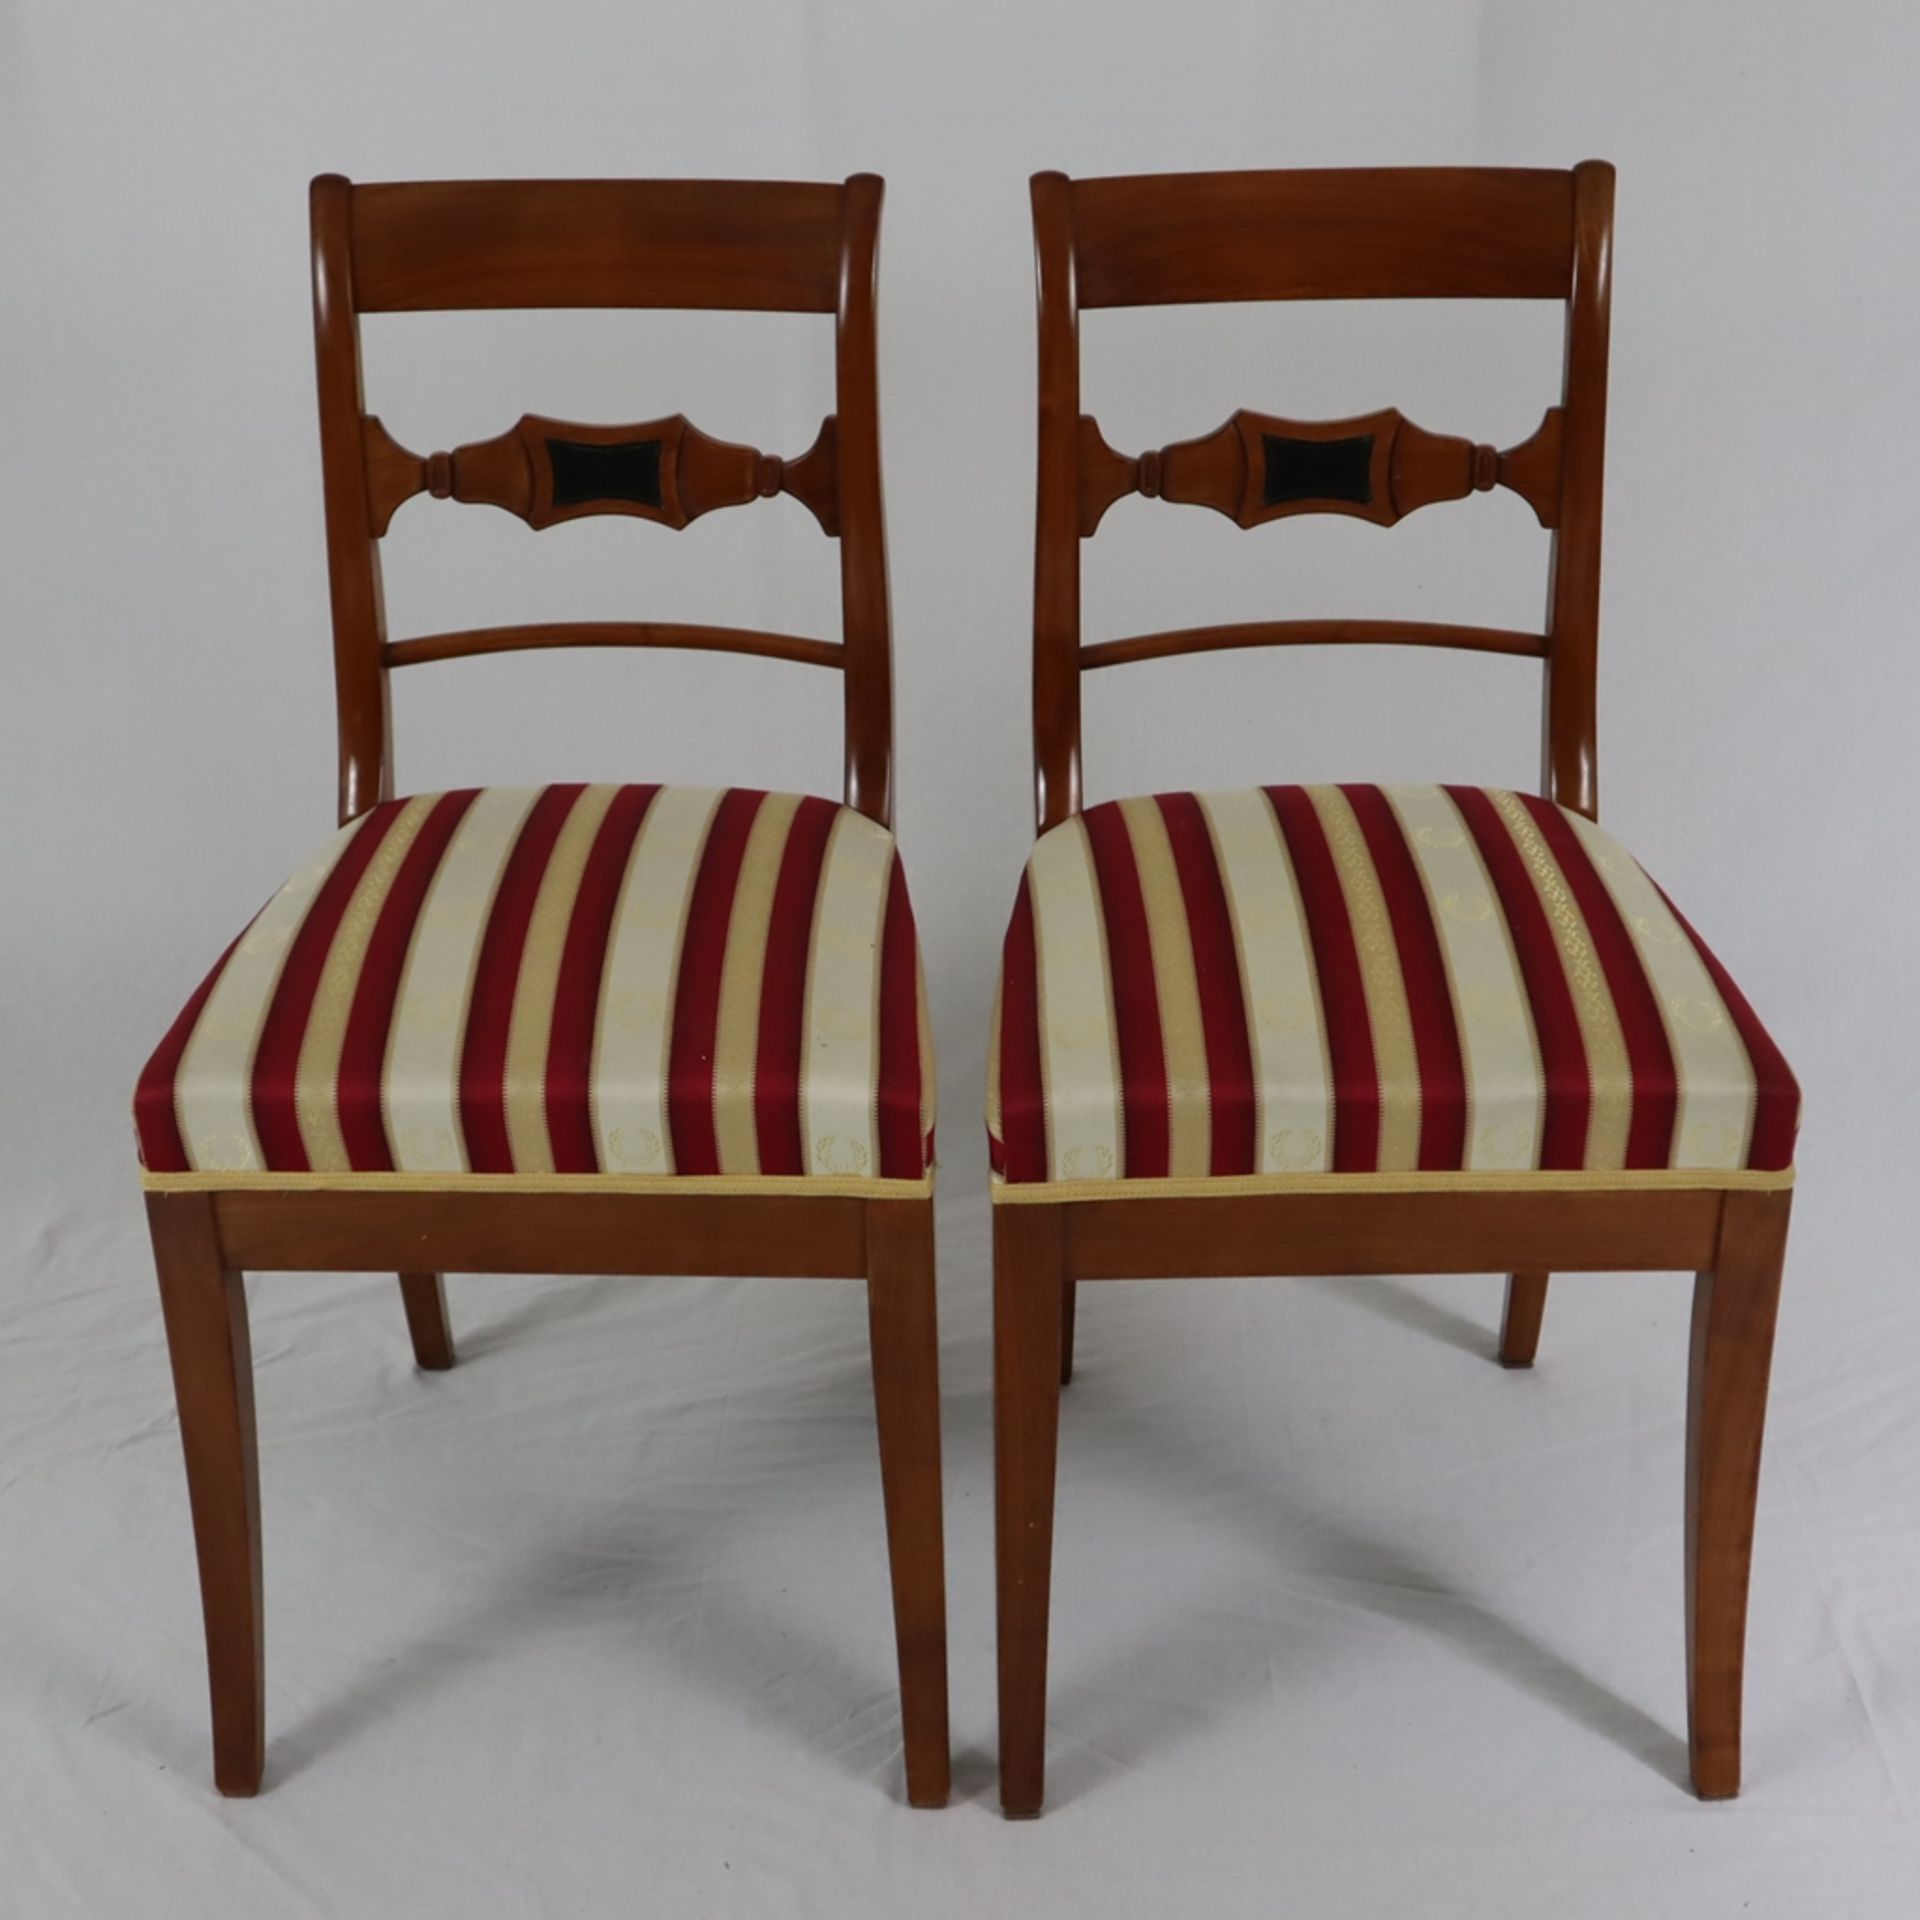 Ein Paar Biedermeier-Stühle - 19.Jh., Kirschbaum, Rückenlehnen mit Zierverstrebung, teils ebonisier